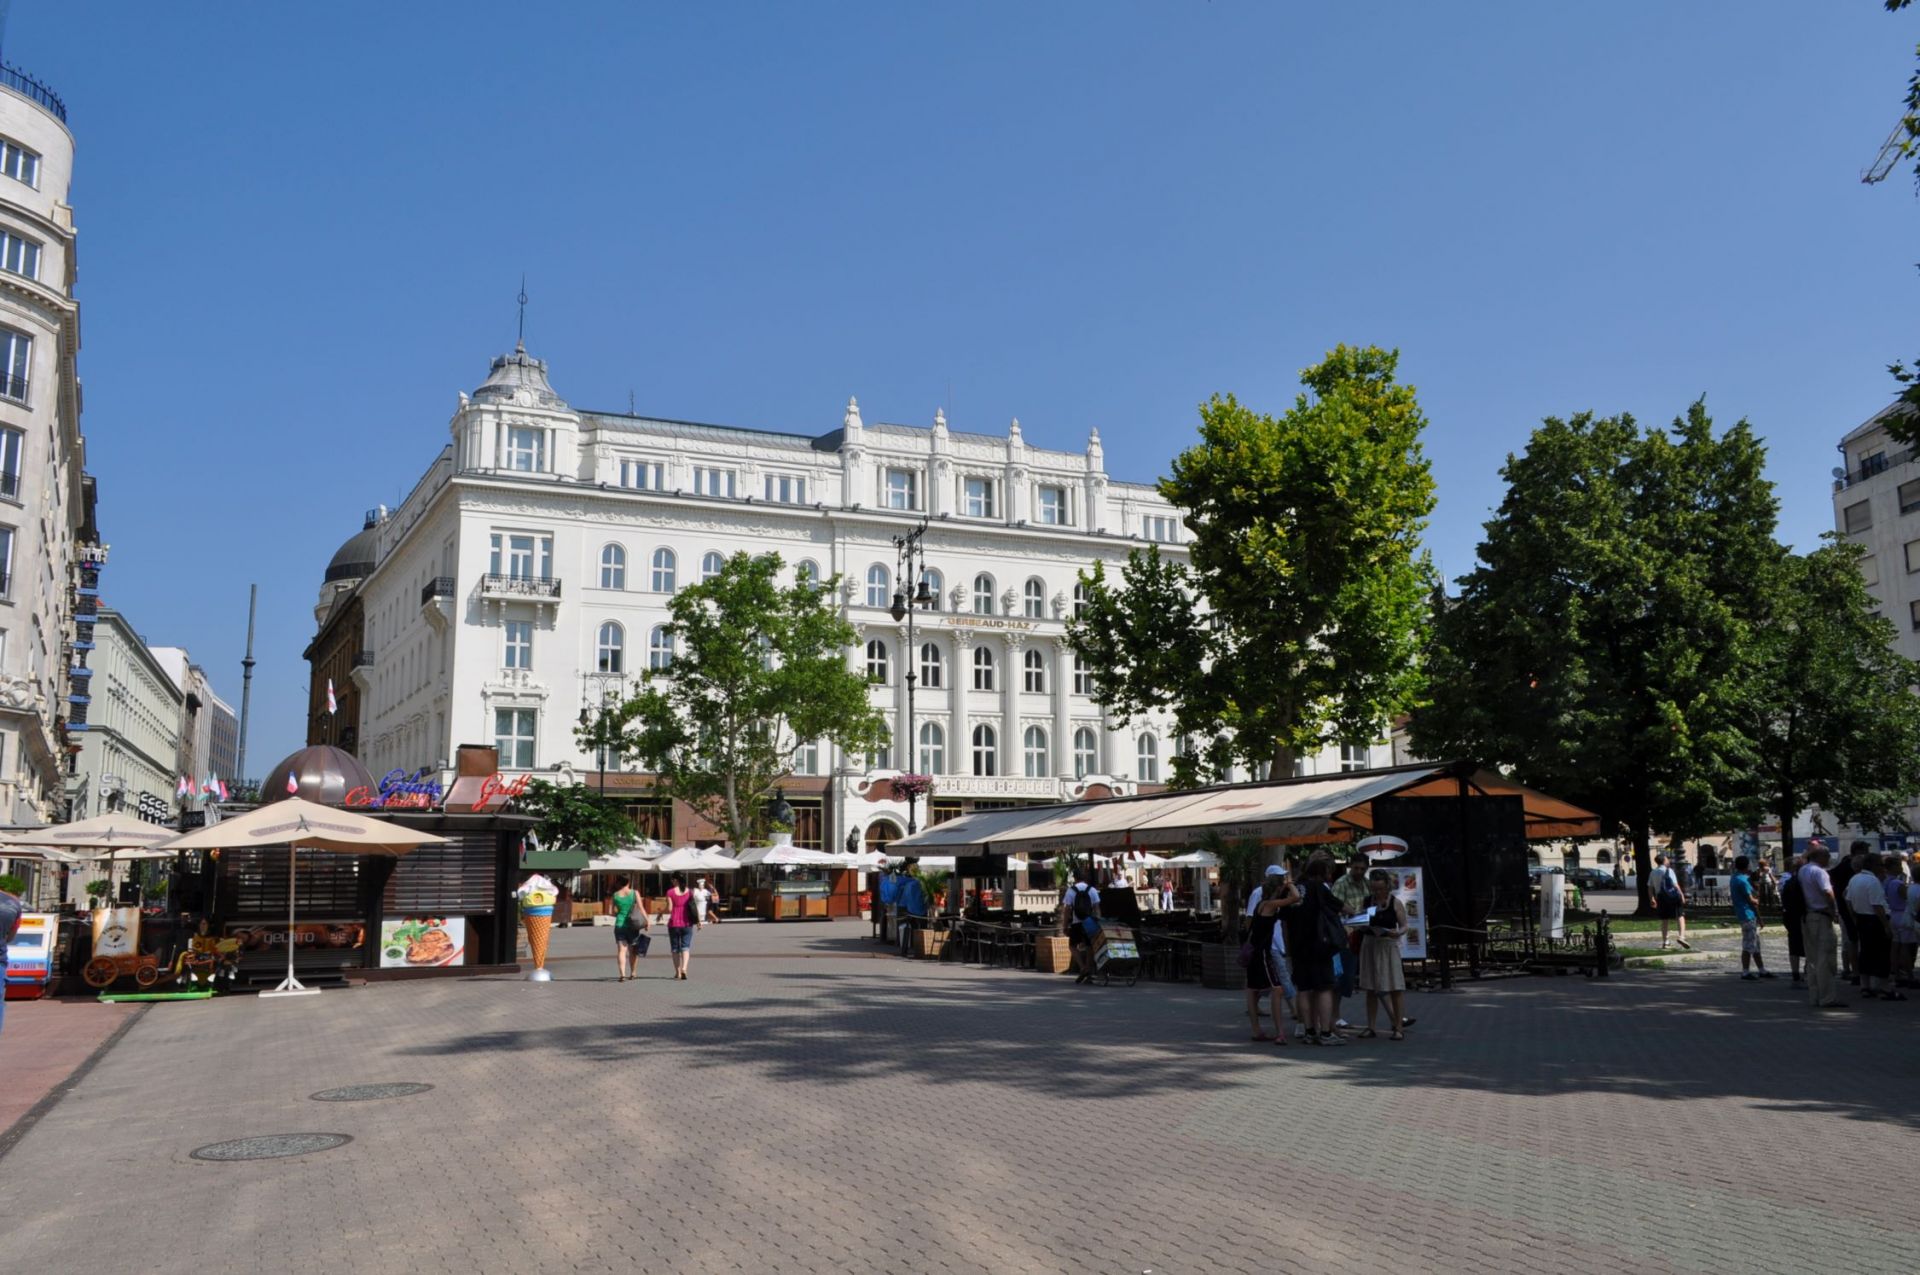 歩行者天国で人気のヴァーツィ通り。広場に面してブダペストを代表する老舗カフェ「Gerbeaud」がある　
🄫駐日ハンガリー大使館観光室